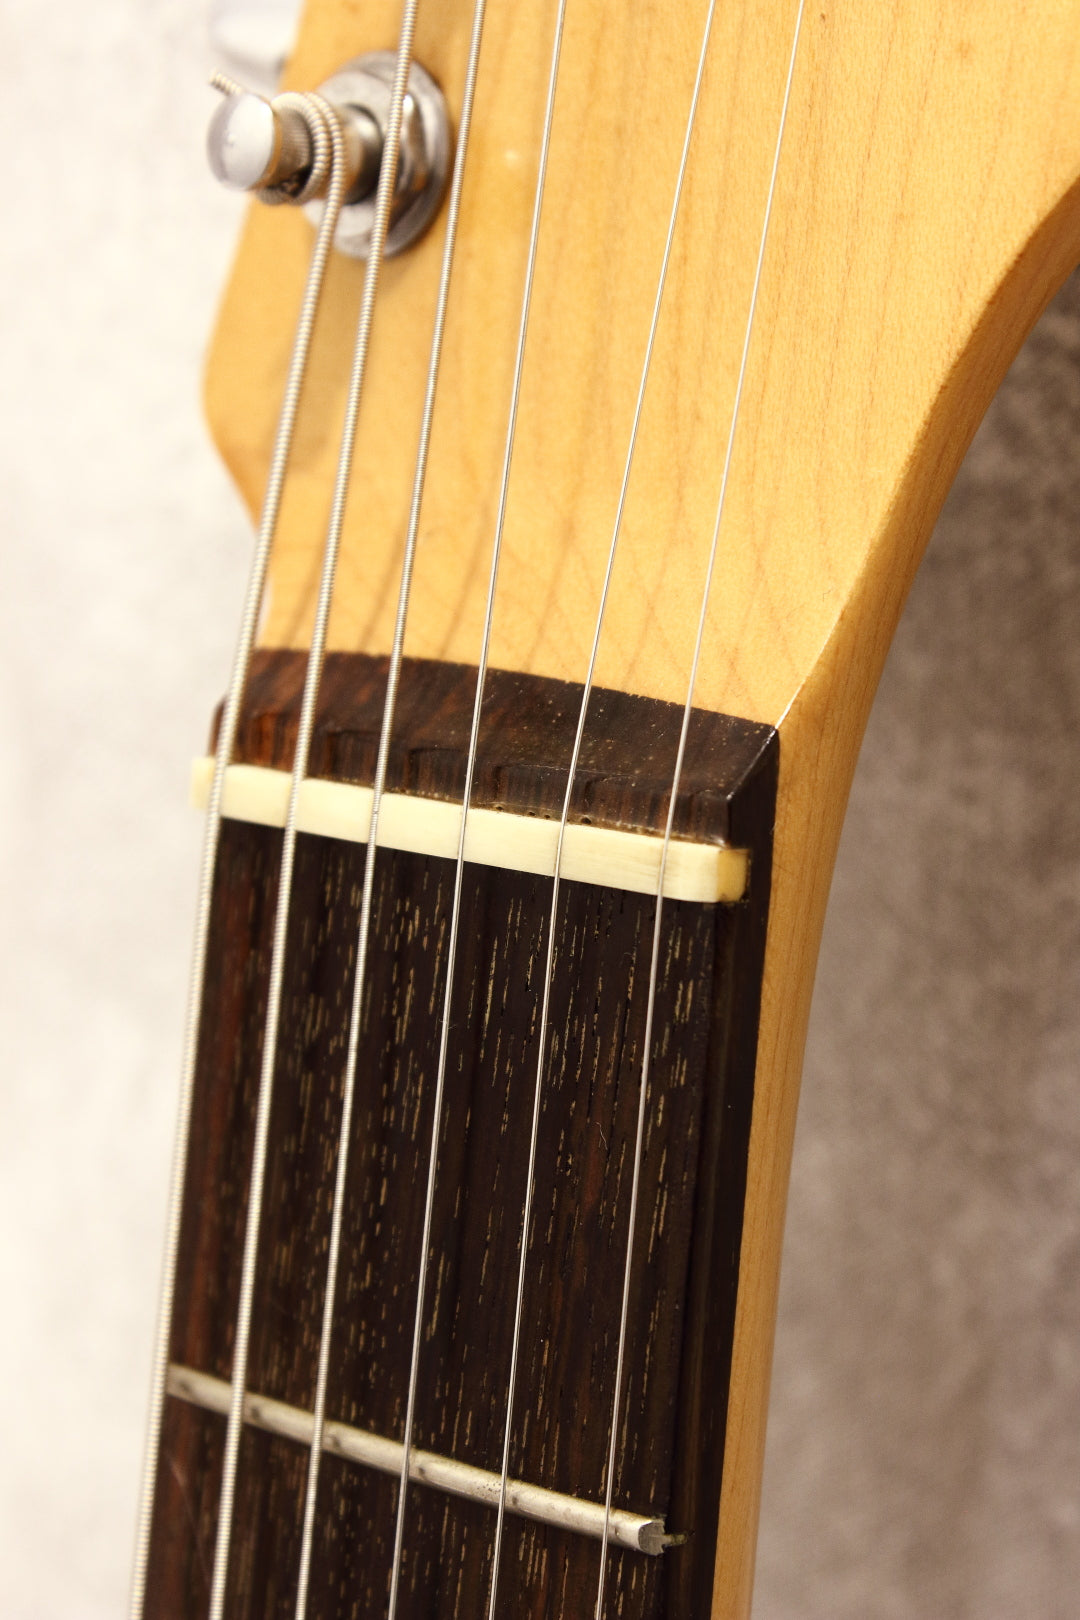 Squier Japan Stratocaster SST30 Black 1987